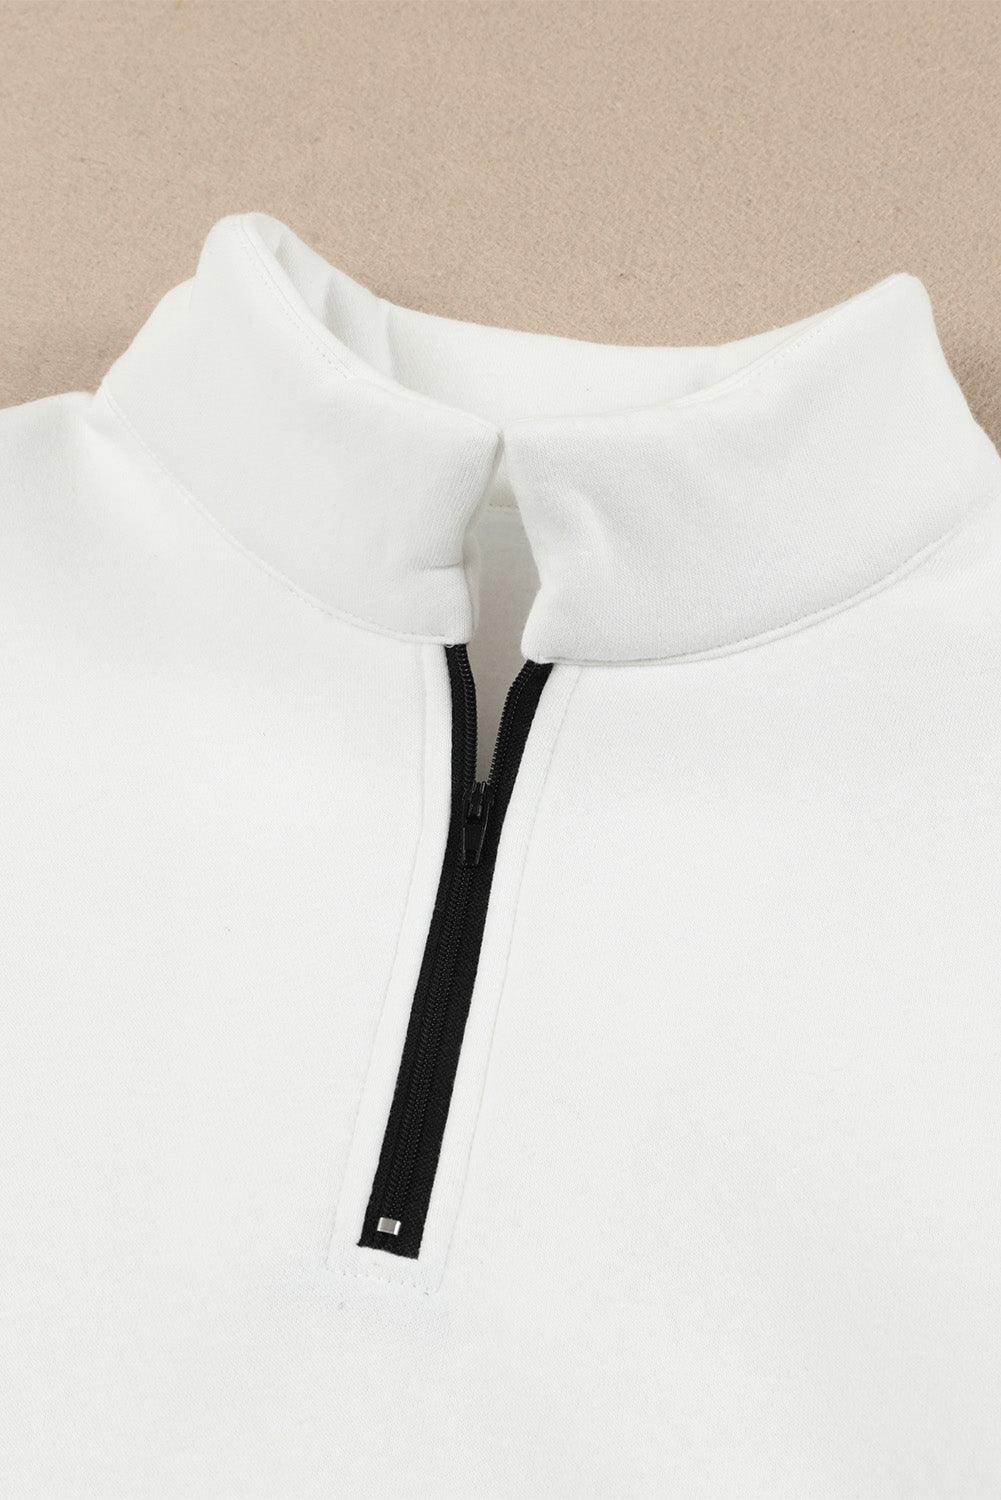 Quarter Zip Dropped Shoulder Sweatshirt - Lucianne Boutique